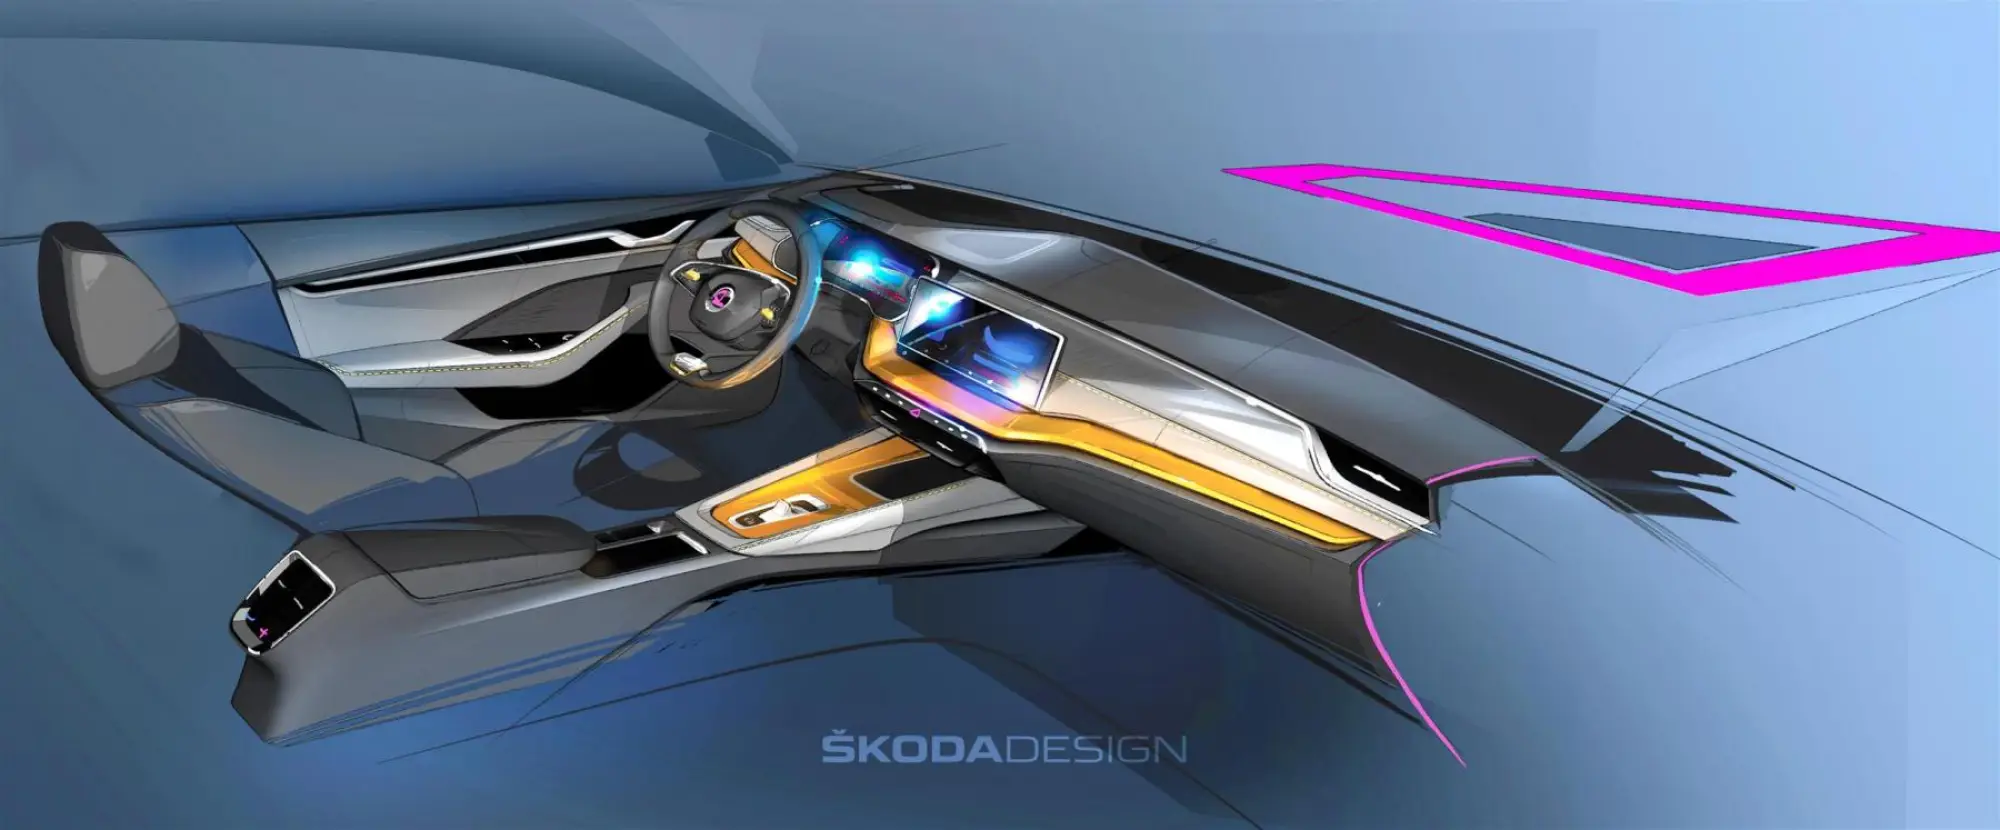 Skoda Octavia 2020 - Teaser - 2